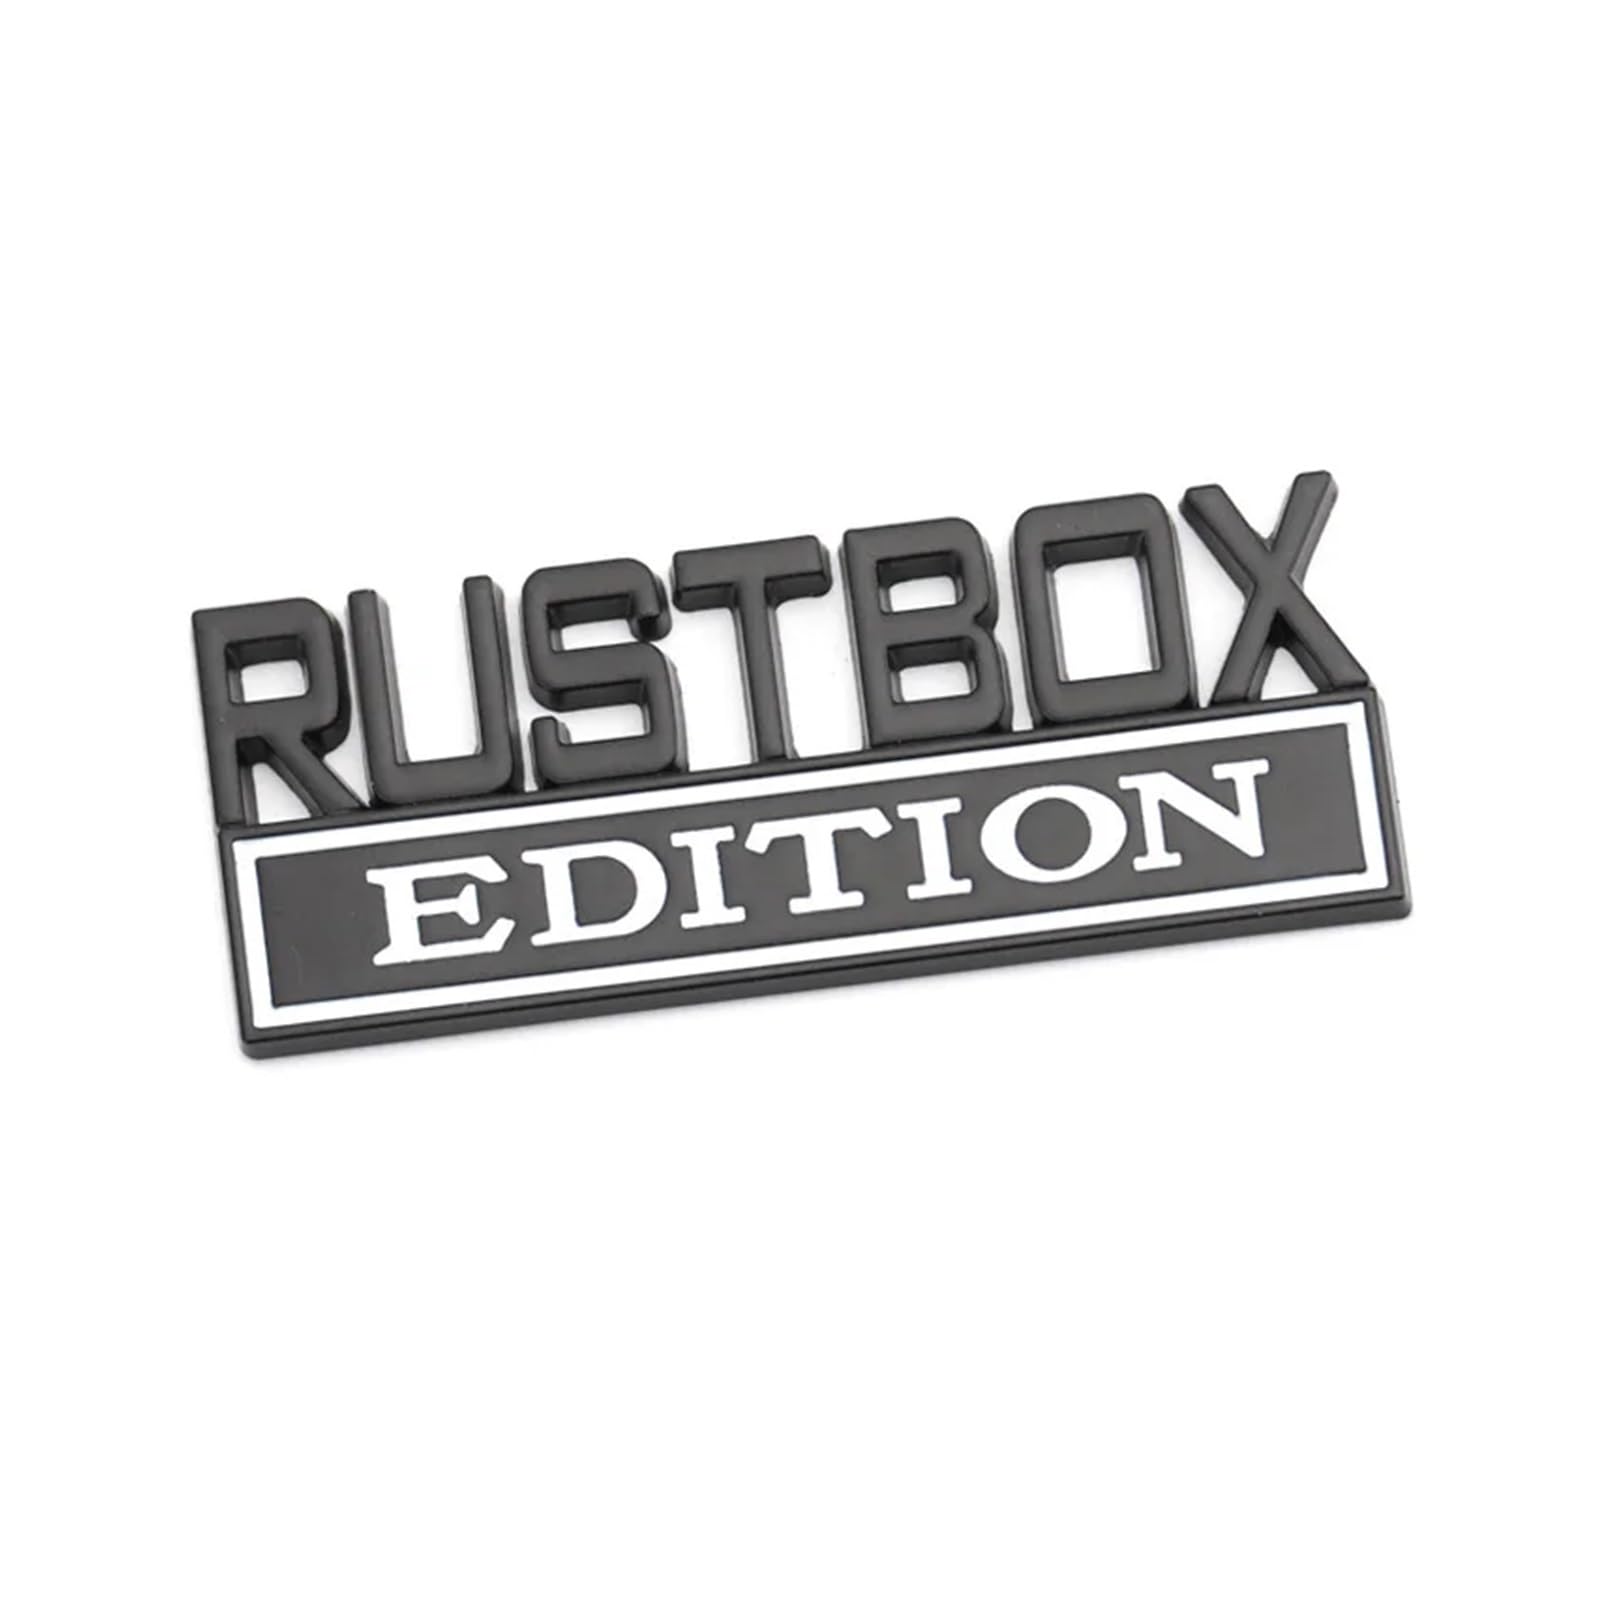 YSRWTBBA Autoaufkleber Rustbox Edition Abzeichen Emblem Motorhaube Kühlergrill, einfach abziehen und abzi(Rustbox sticker-01) von YSRWTBBA